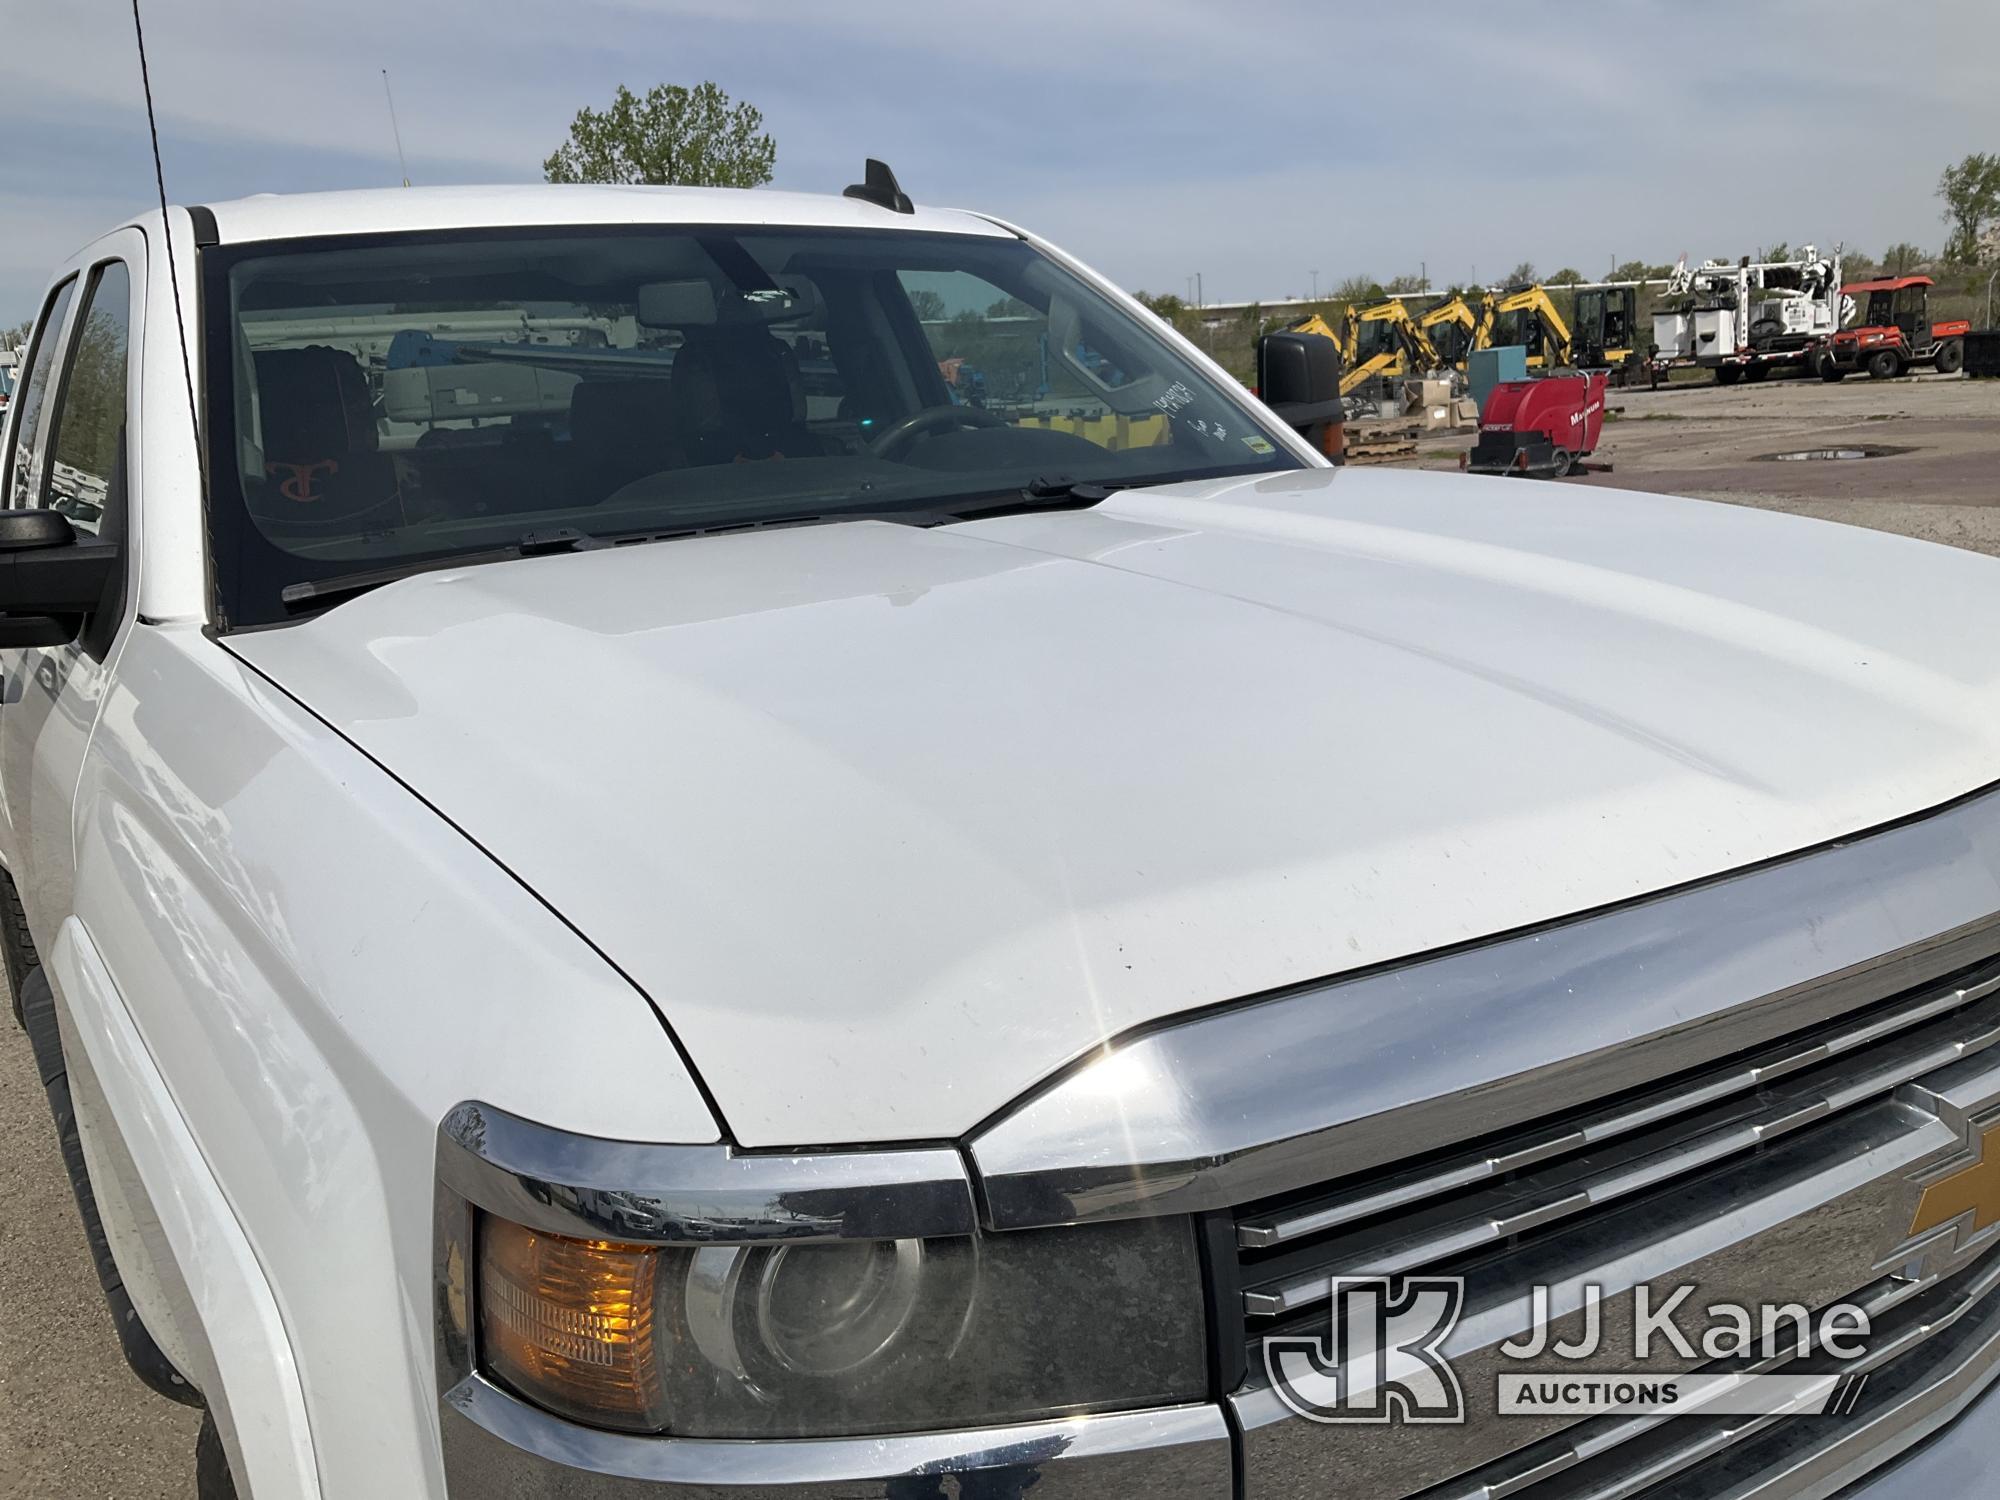 (Kansas City, MO) 2015 Chevrolet Silverado 2500HD 4x4 Pickup Truck Runs & Moves) ABS, Traction Contr